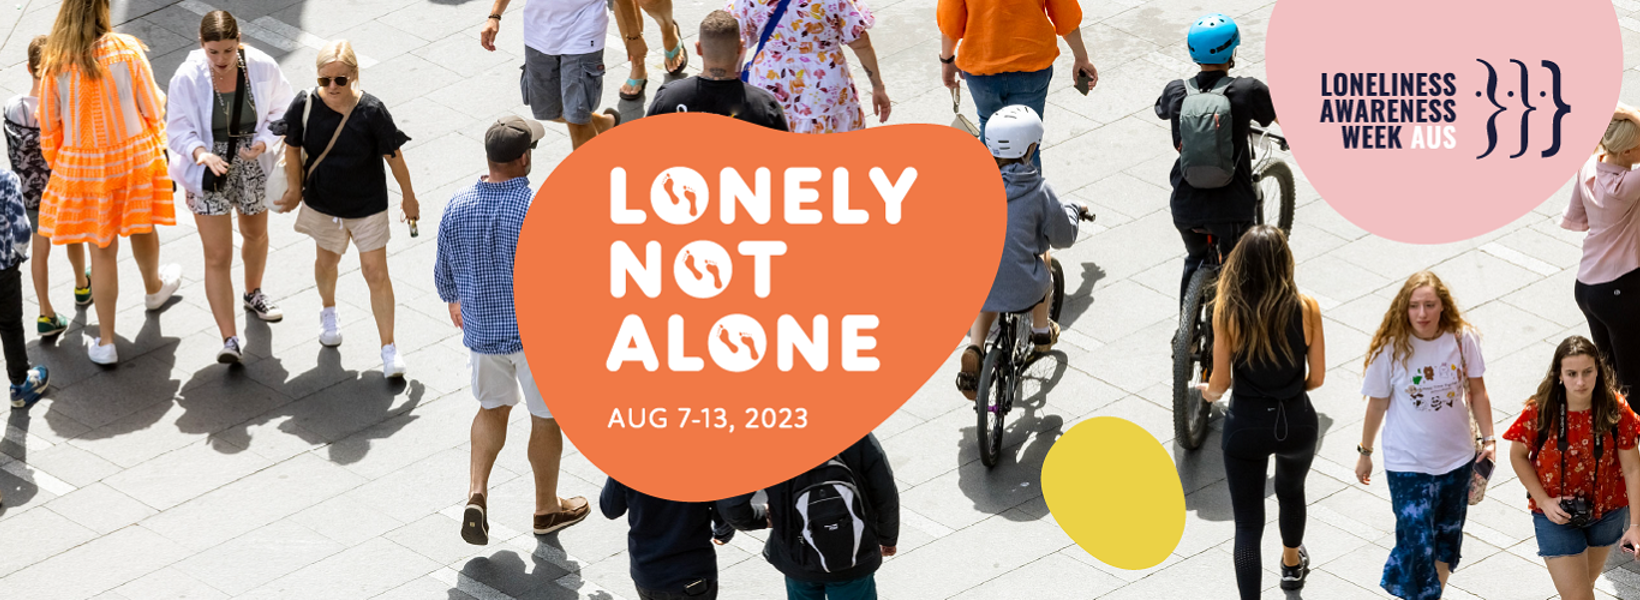 Loneliness Awareness Week